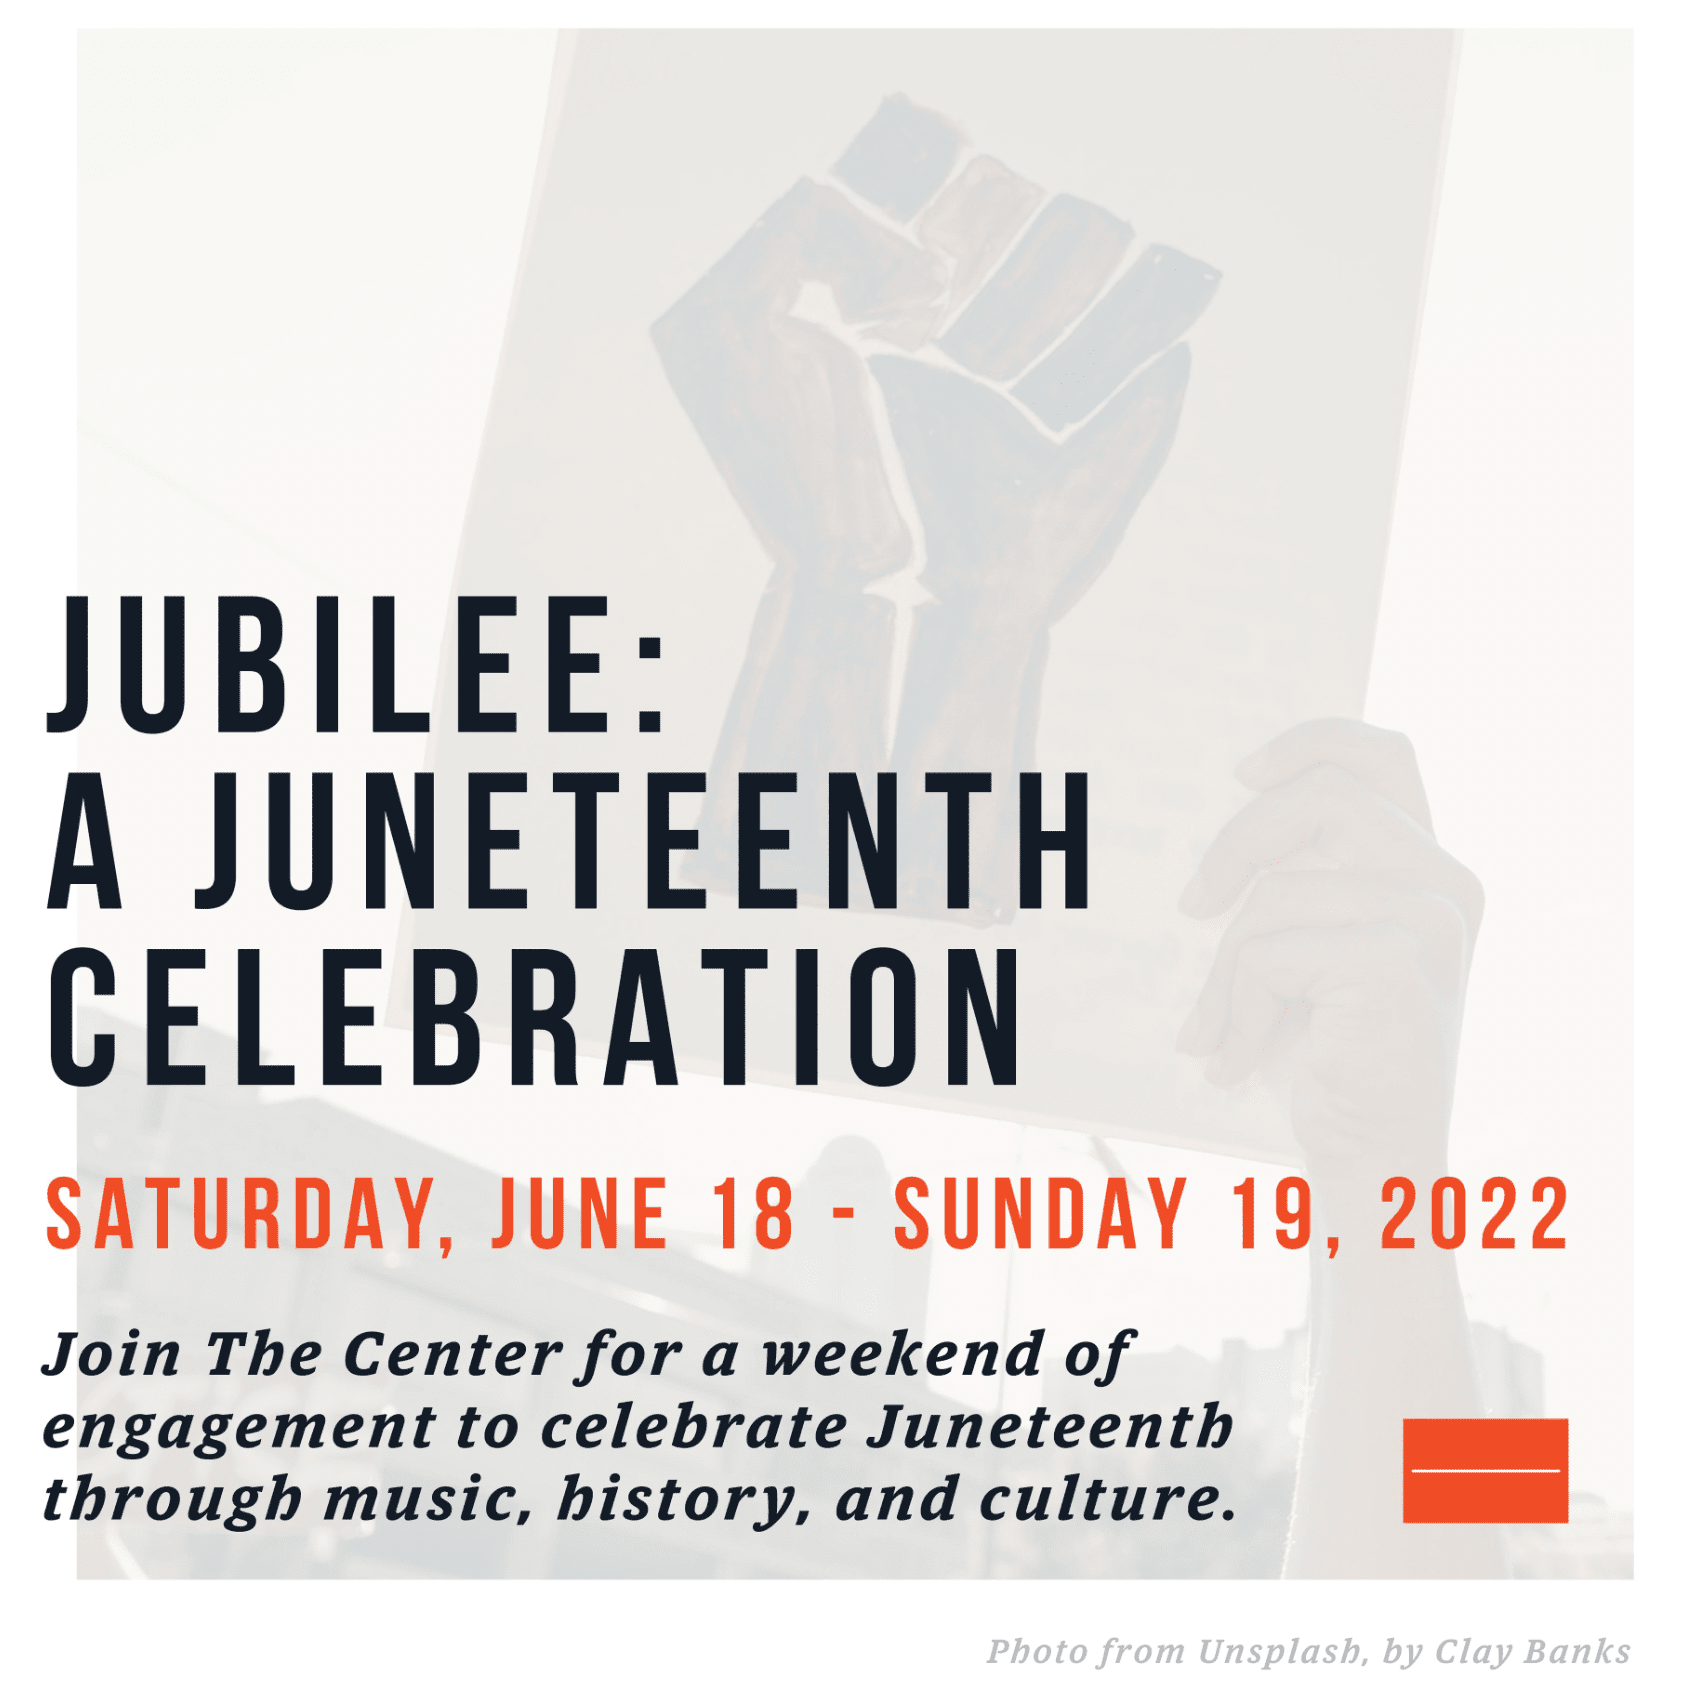 Jubilee: a Juneteenth celebration